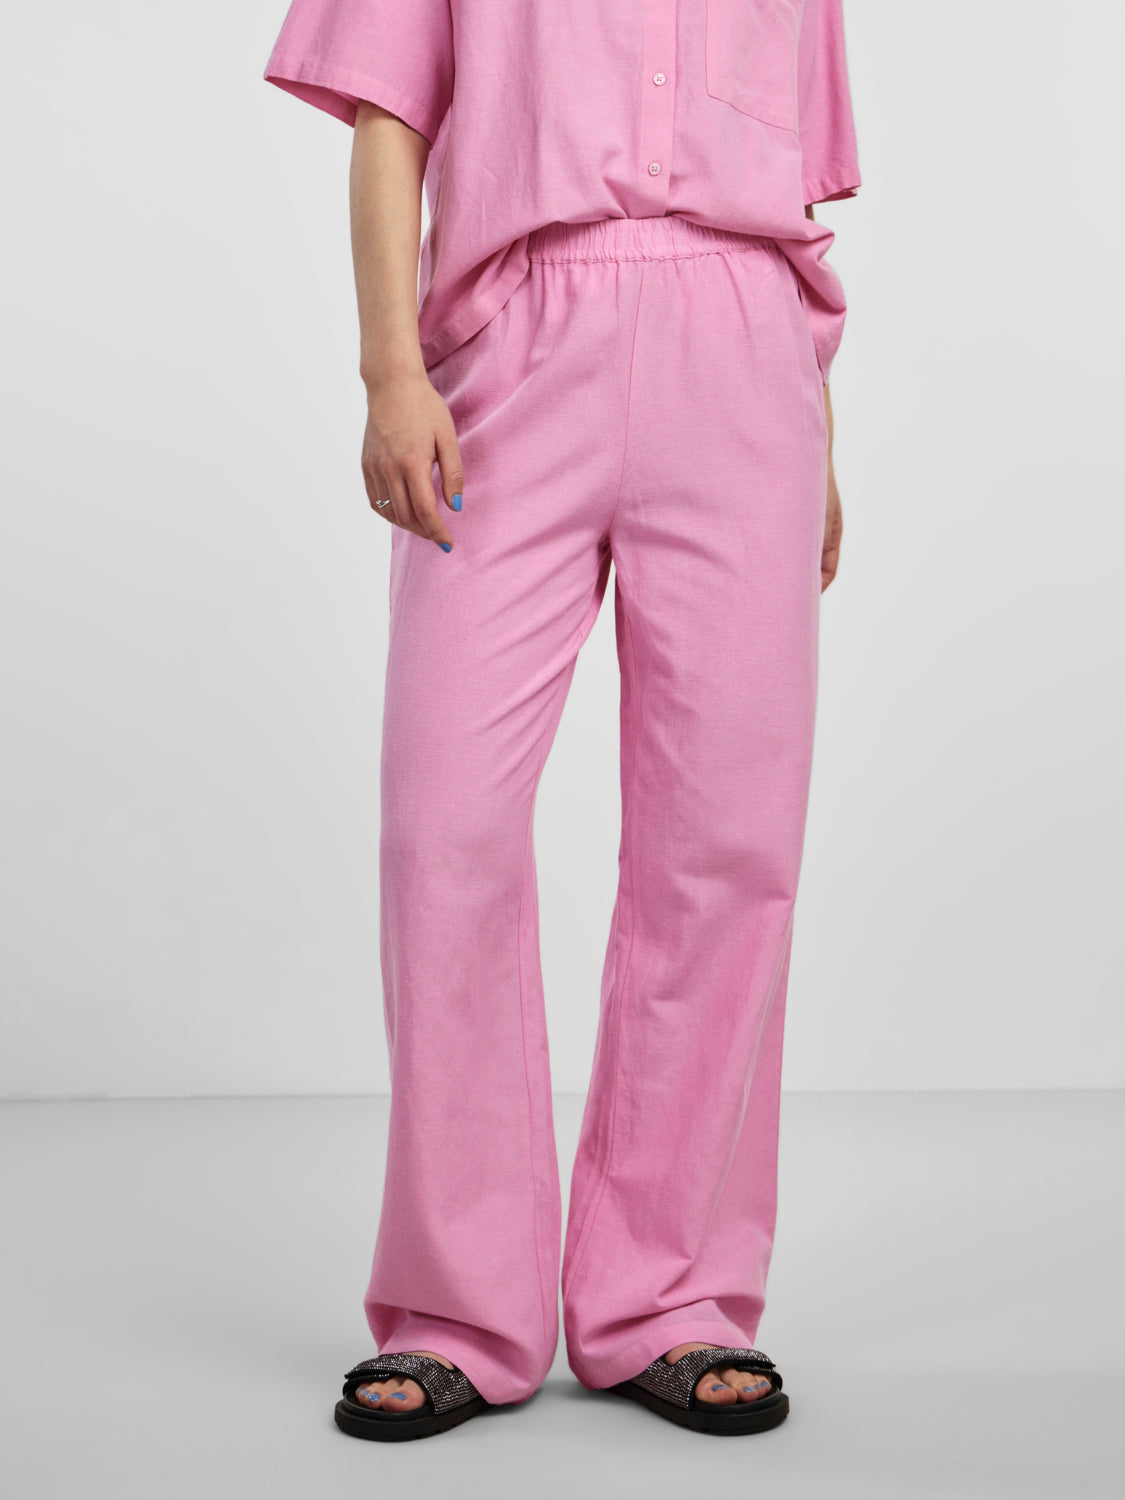 PCMILANO Pants - Begonia Pink